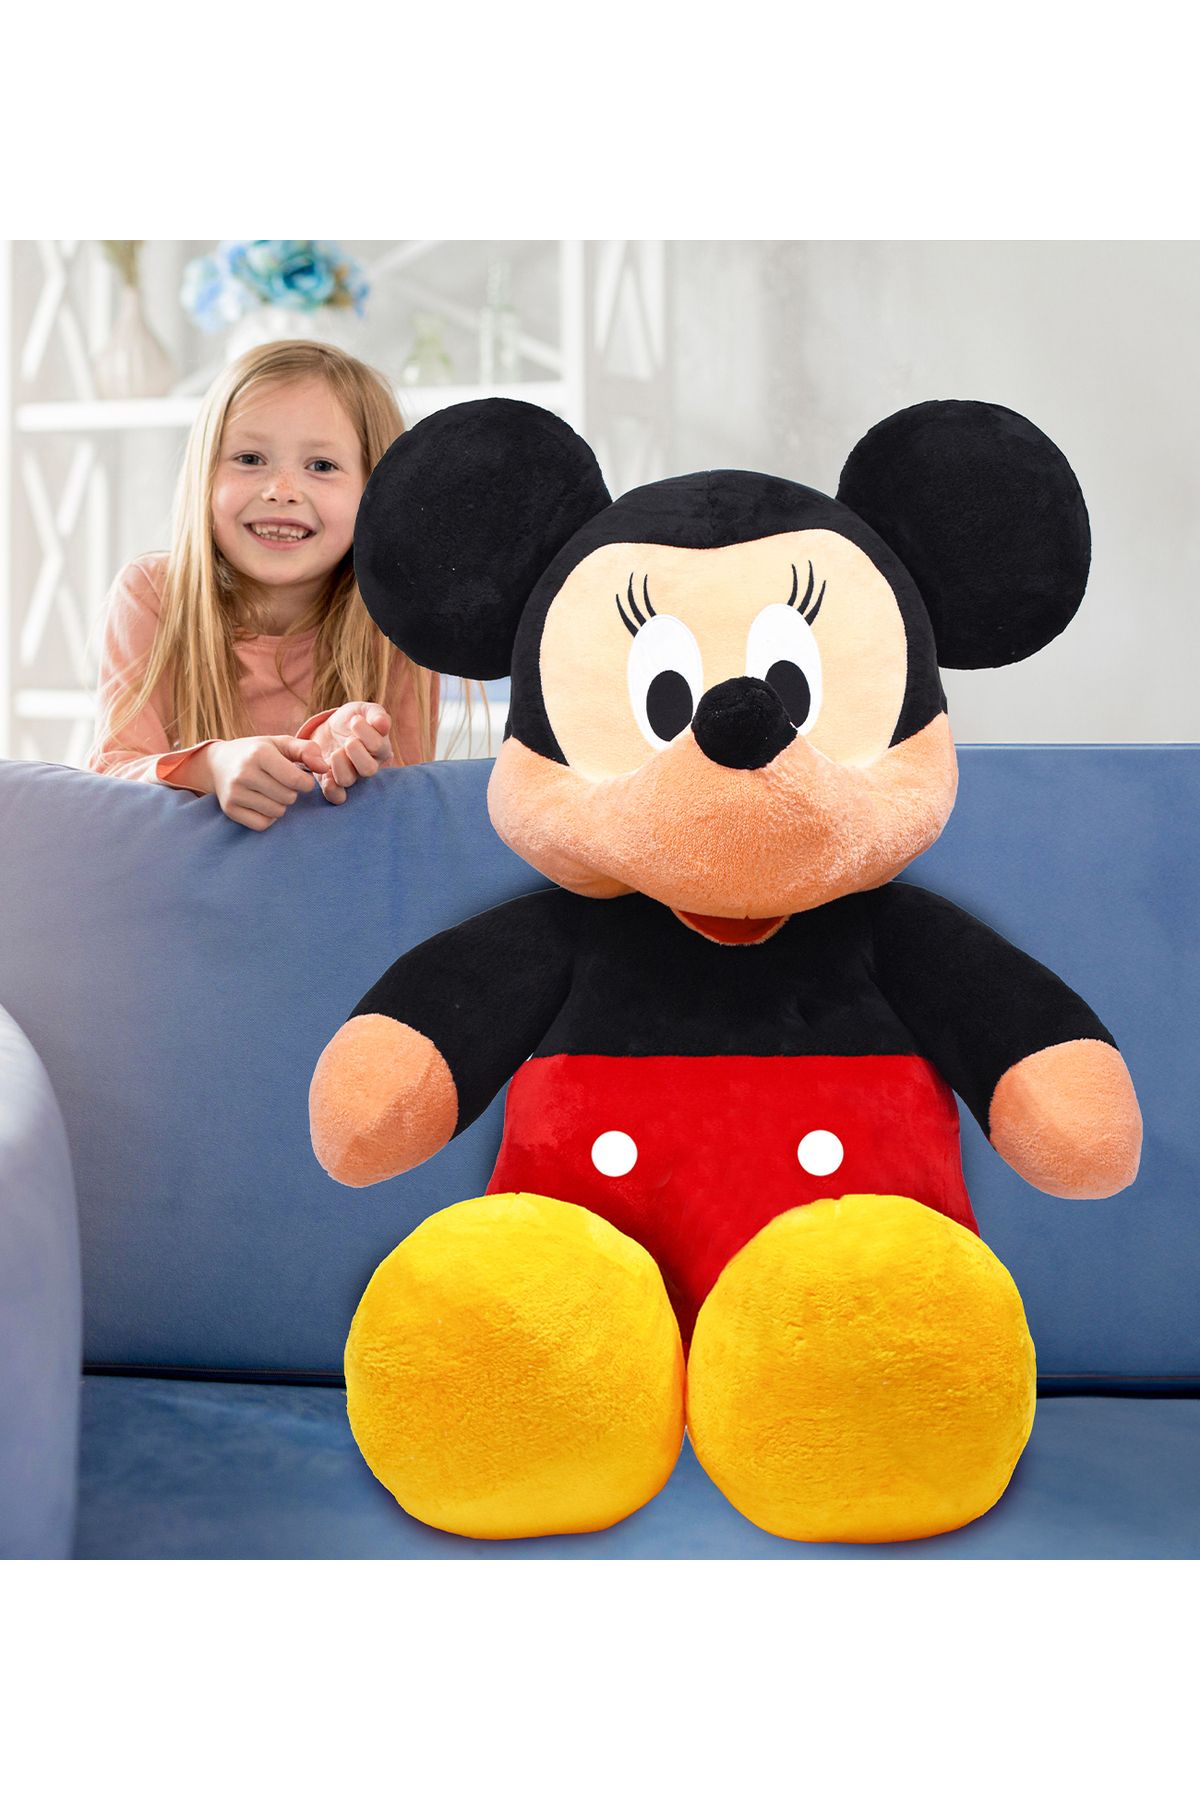 Özgüner Oyuncak Mickey Mouse XXL 120 cm Oyun Arkadaşı